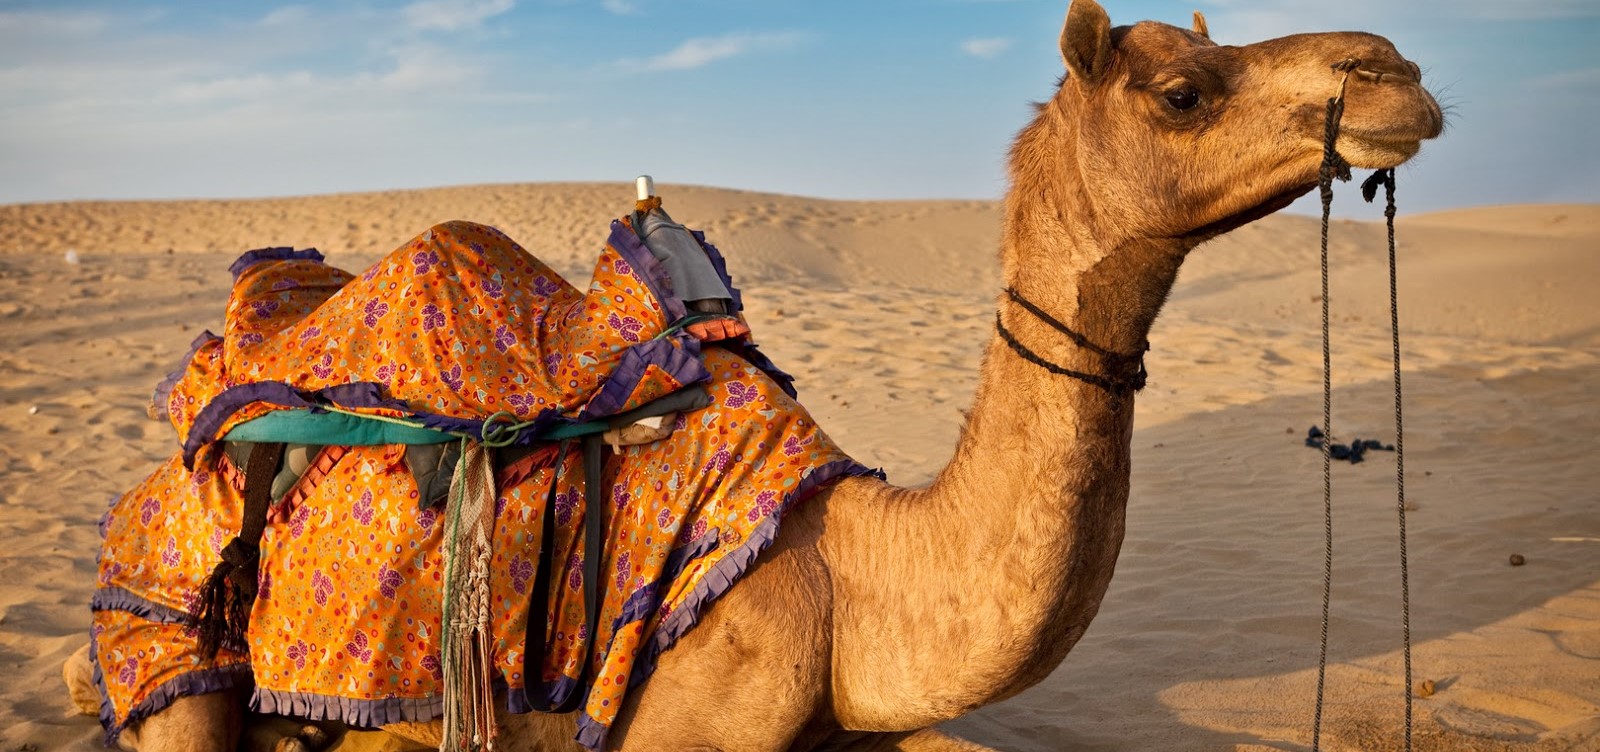 Γέρικη καμήλα διένυσε 100 χλμ. στην έρημο για να βρει το παλιό της σπίτι (βίντεο)